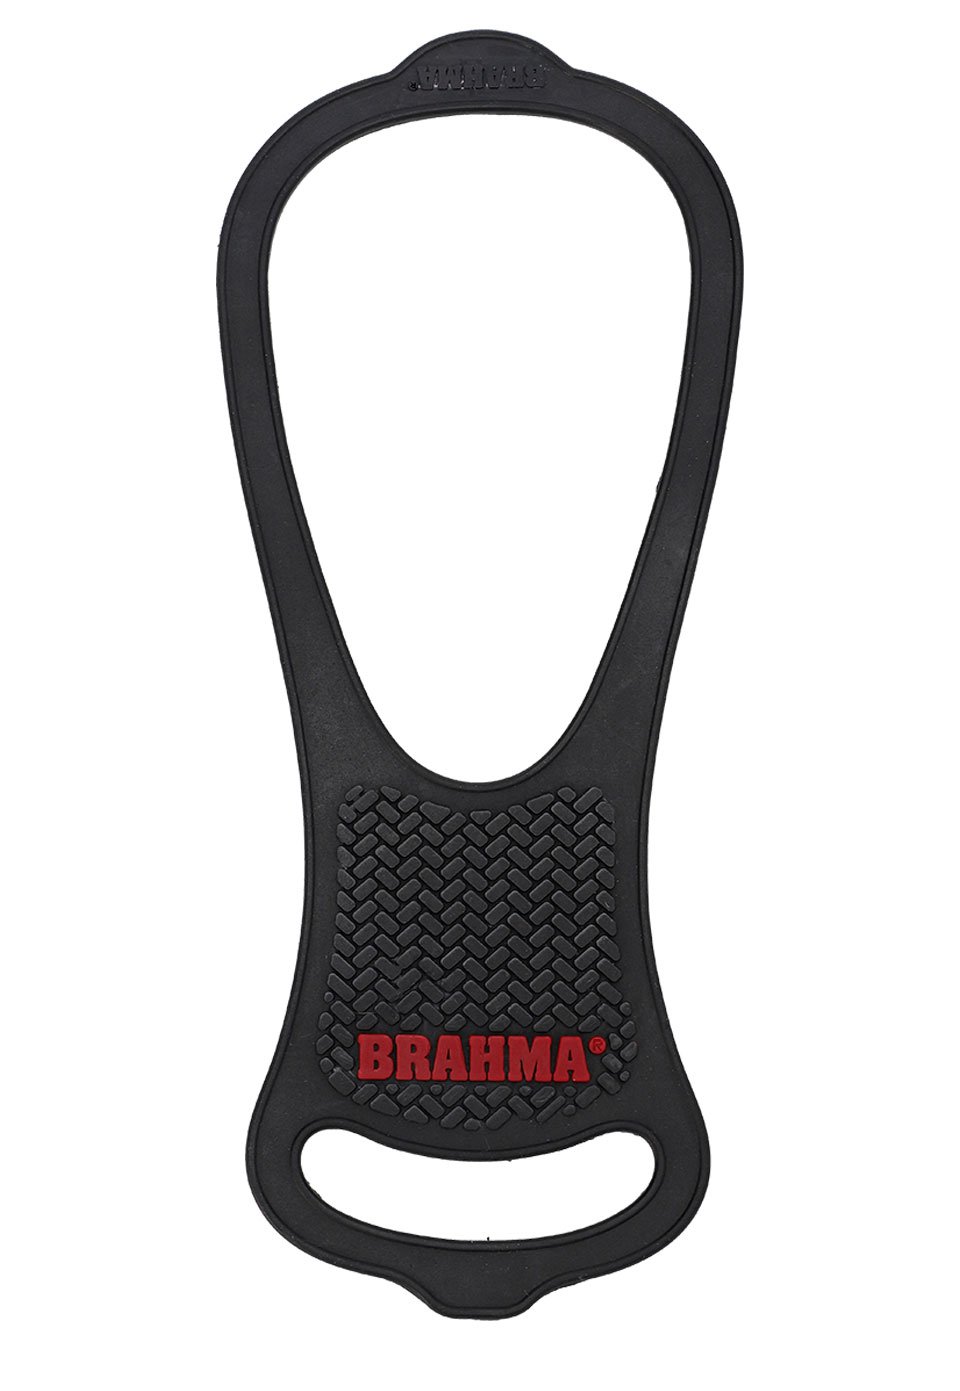 Brahma - Página Oficial - VAR0045-NEG Protector de botas para moto Unisex